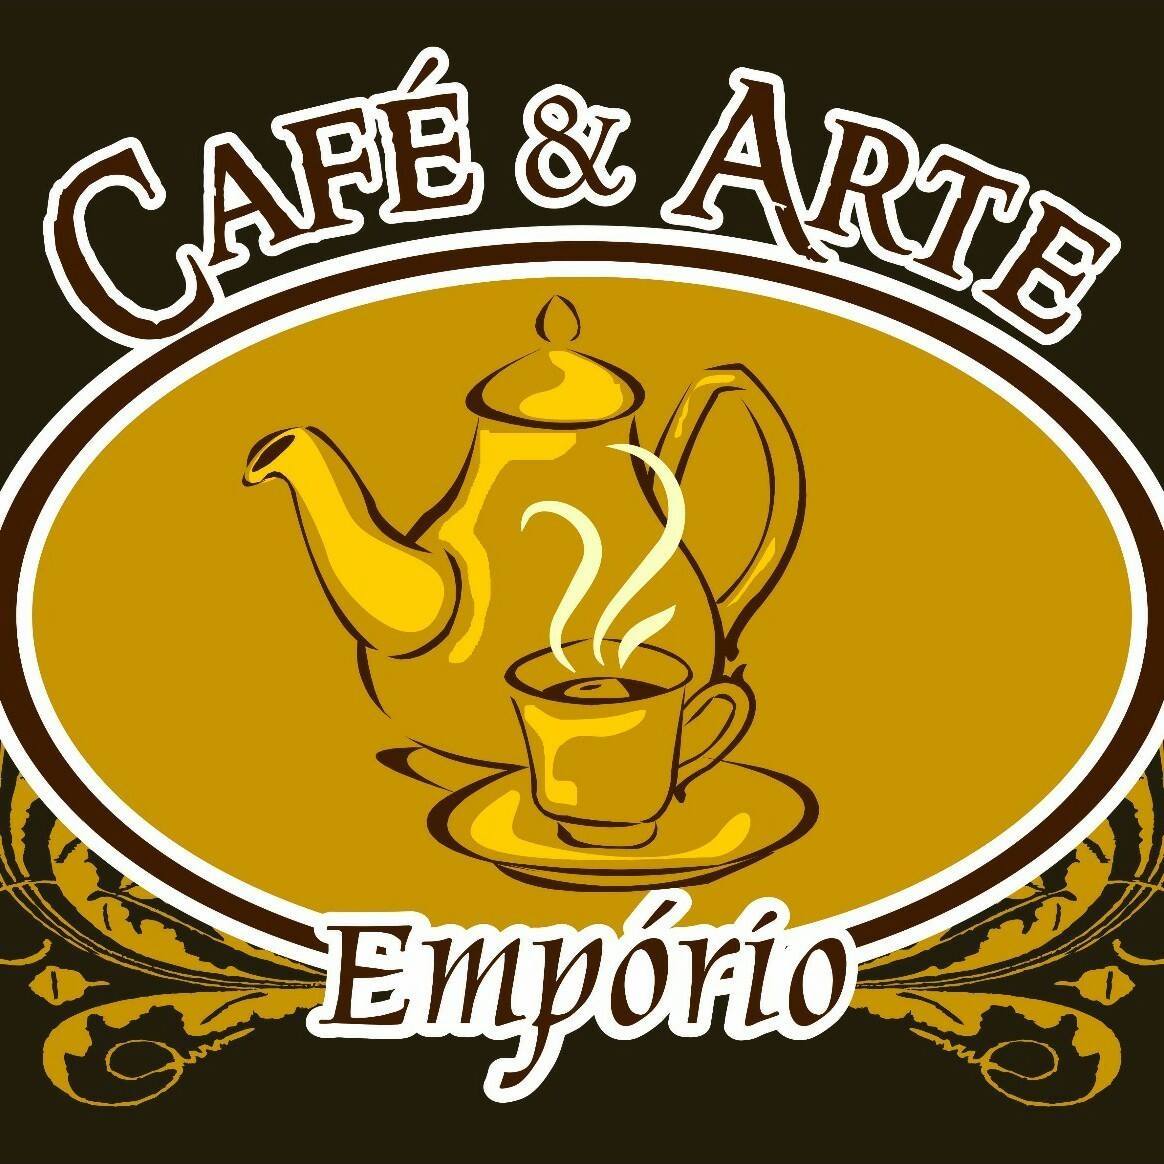 Empório & Café das Artes